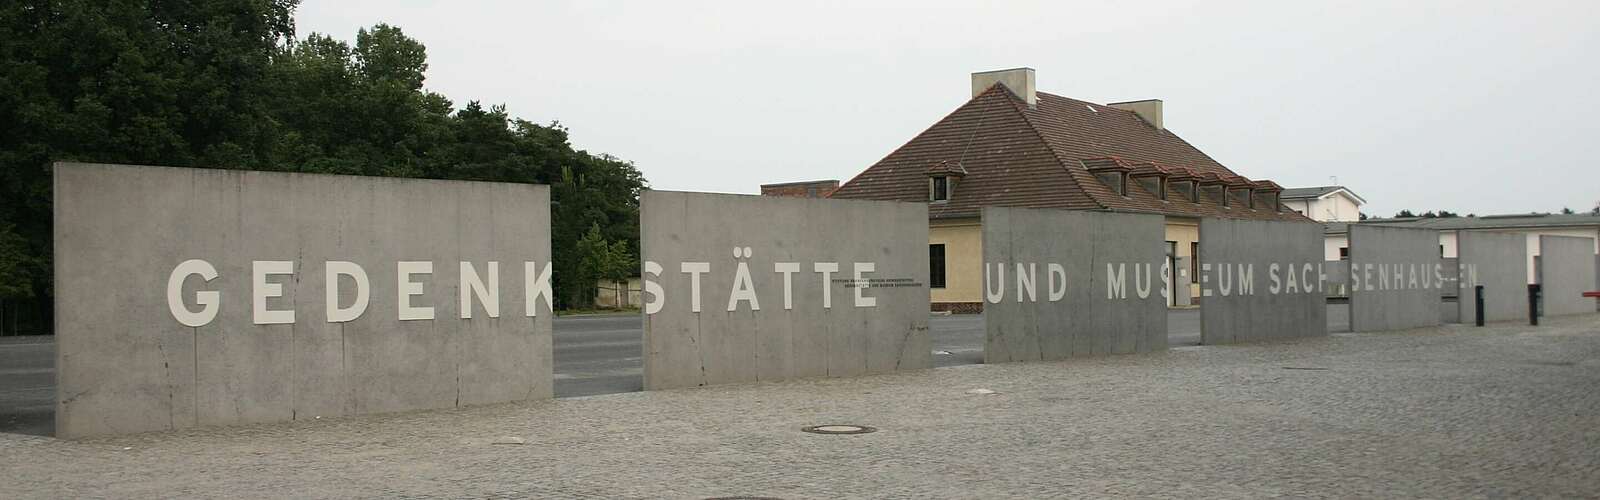 Gedenkstätte und Museum Sachsenhausen,
        
    

        Foto: Tourismusverband Ruppiner Seenland e.V./Madlen Wetzel